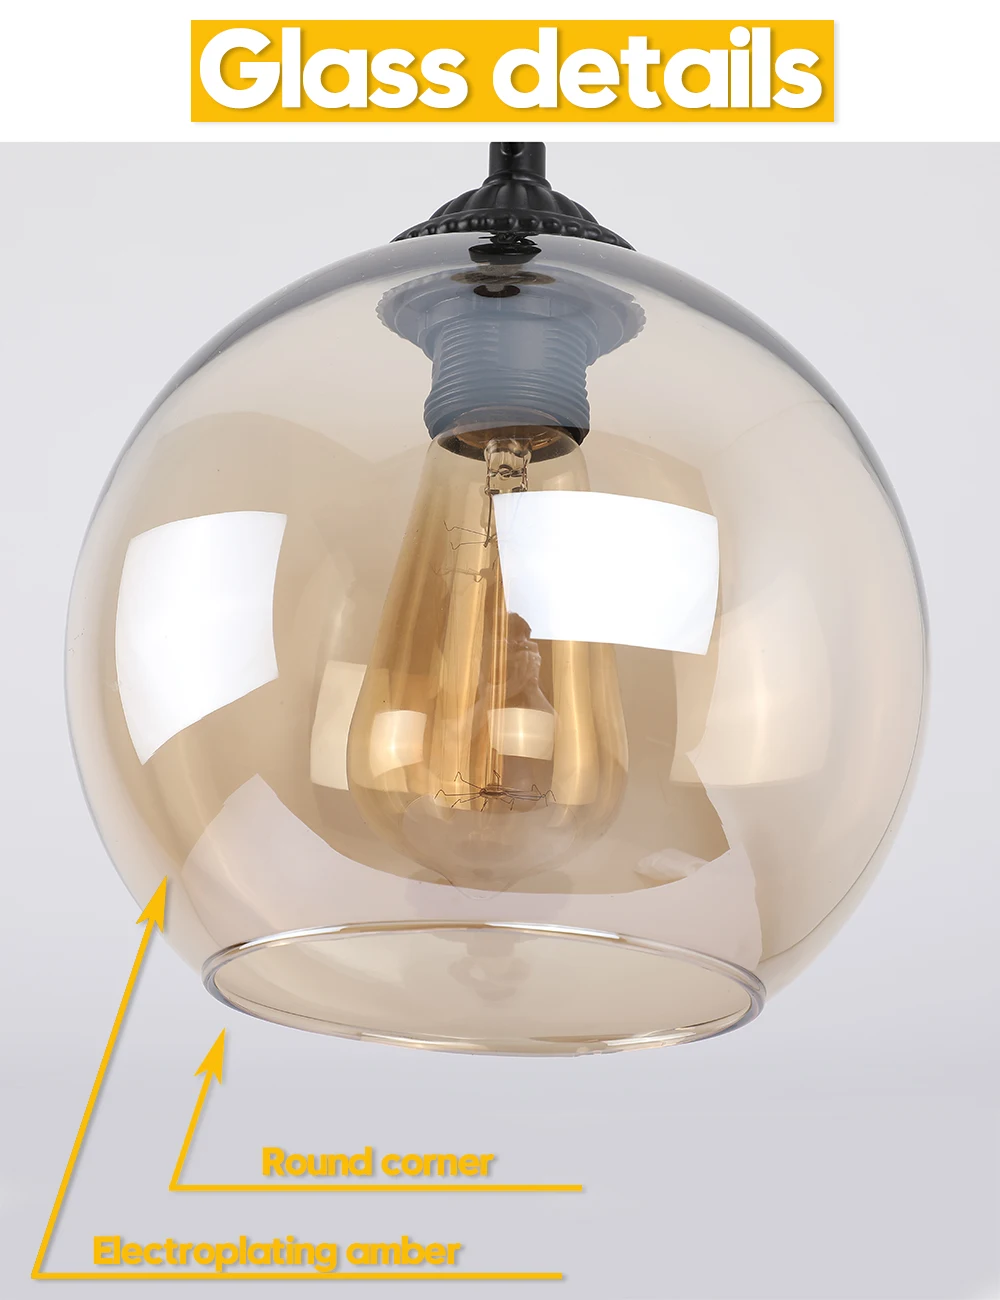 Лофт Винтаж Ретро подвесные светильники промышленный стеклянный шар пеньковая веревка E27 светильники для ресторана столовой гостиной кафе бара